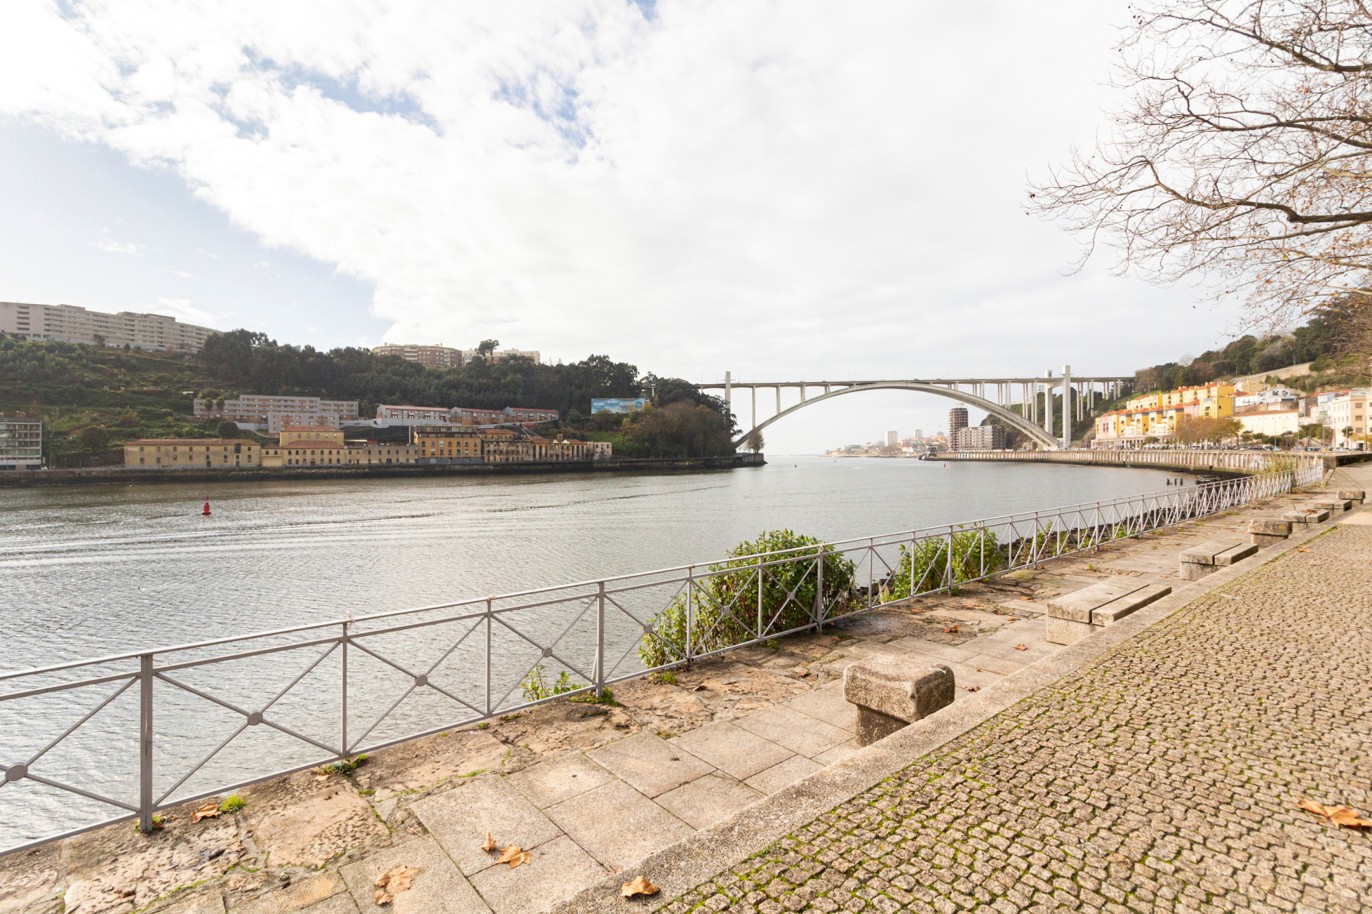 Moradia nova V2, para arrendar, em condomínio privado junto ao rio, Porto_217223